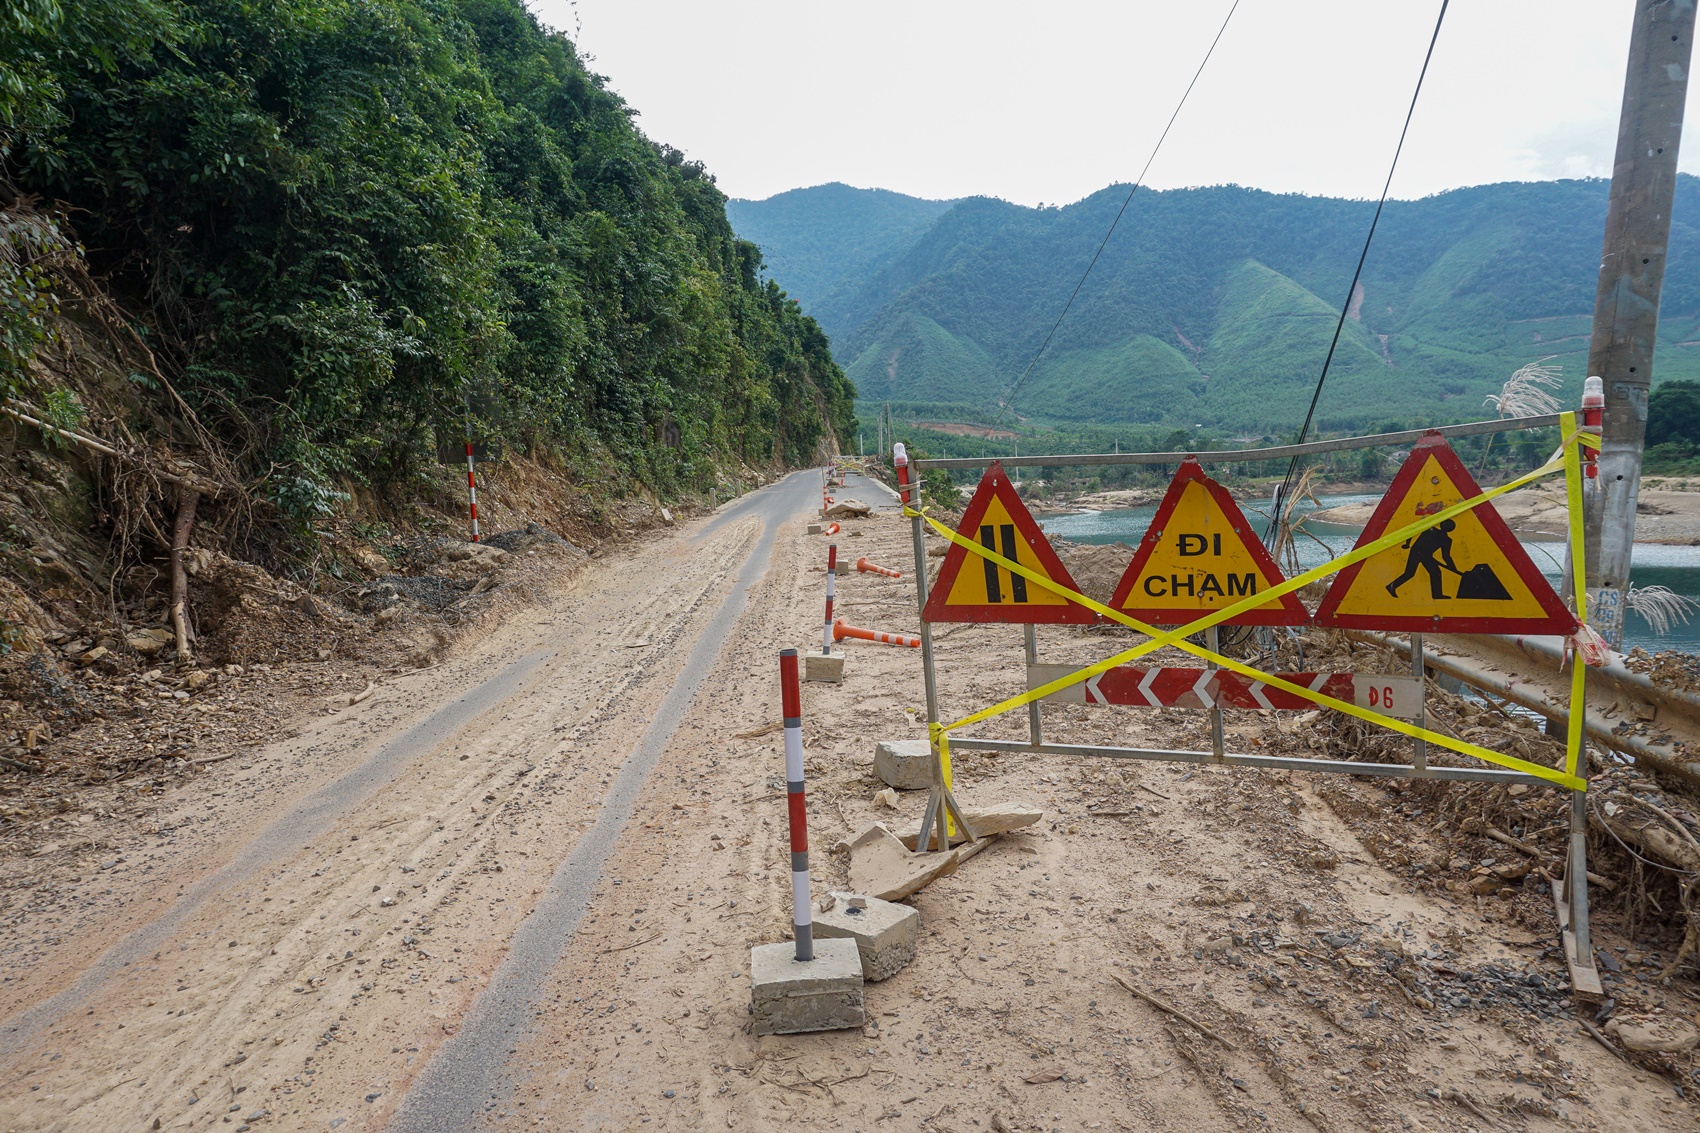 Đường hơn 700 tỷ ở Đà Nẵng chưa hoàn thiện đã nứt toác, sạt lở vì mưa lũ - Ảnh 10.